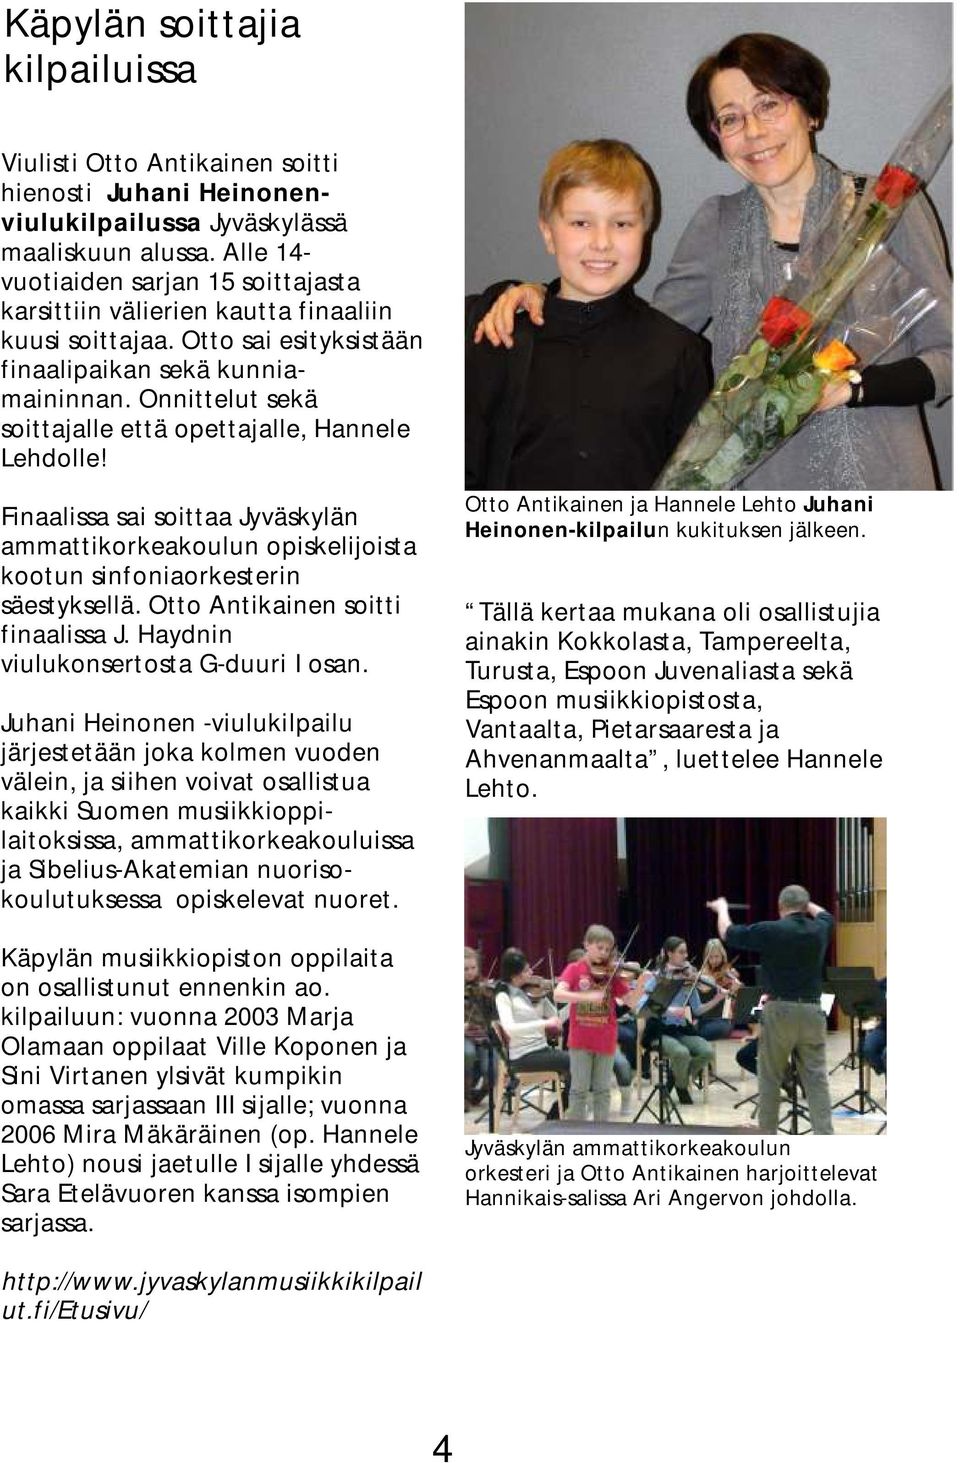 Onnittelut sekä soittajalle että opettajalle, Hannele Lehdolle! Finaalissa sai soittaa Jyväskylän ammattikorkeakoulun opiskelijoista kootun sinfoniaorkesterin säestyksellä.